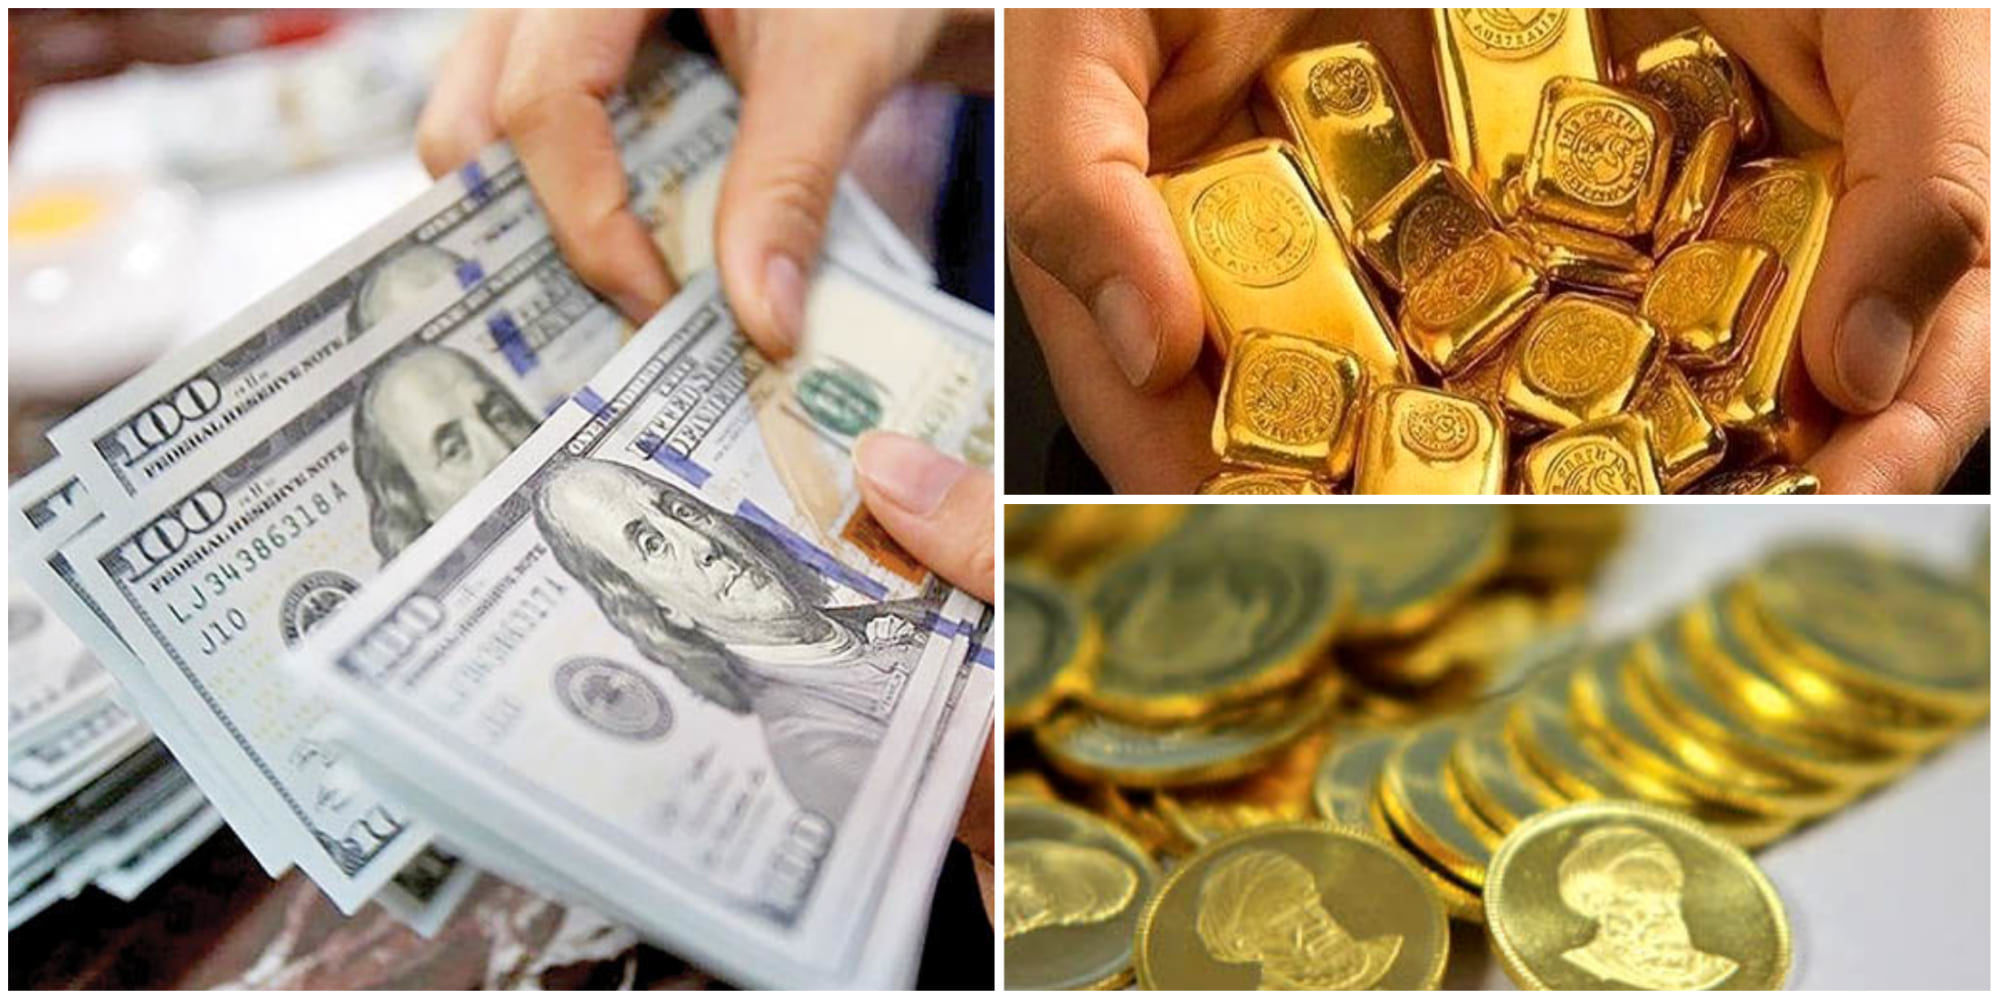 حال و هوای بازار ارز و طلا/عقب نشینی نرخ دلار در سلیمانیه 